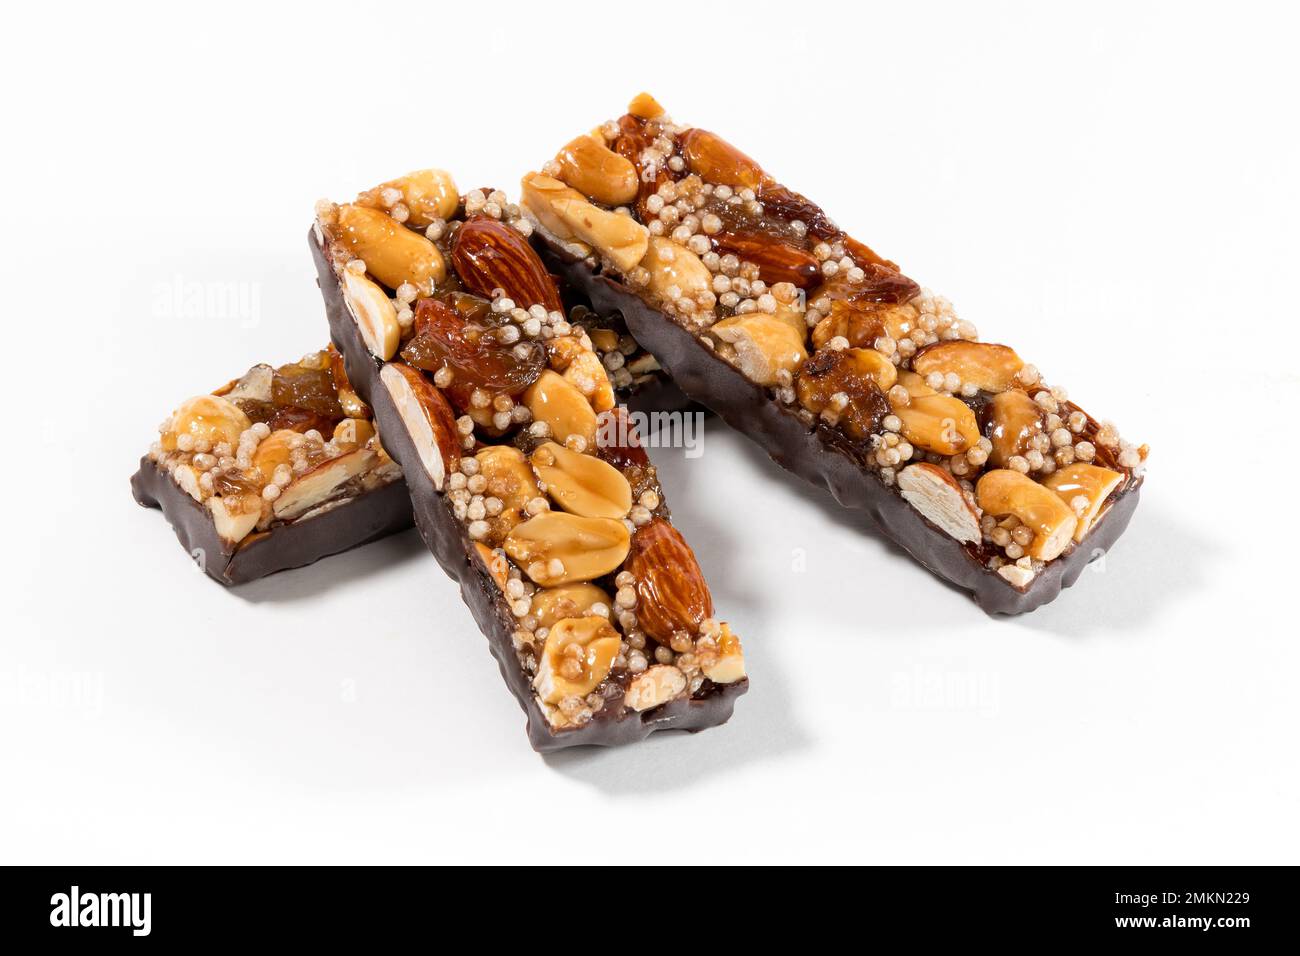 Von oben: Leckere, süße Energieriegel mit Nüssen und Samen, die mit Schokolade bedeckt sind Stockfoto